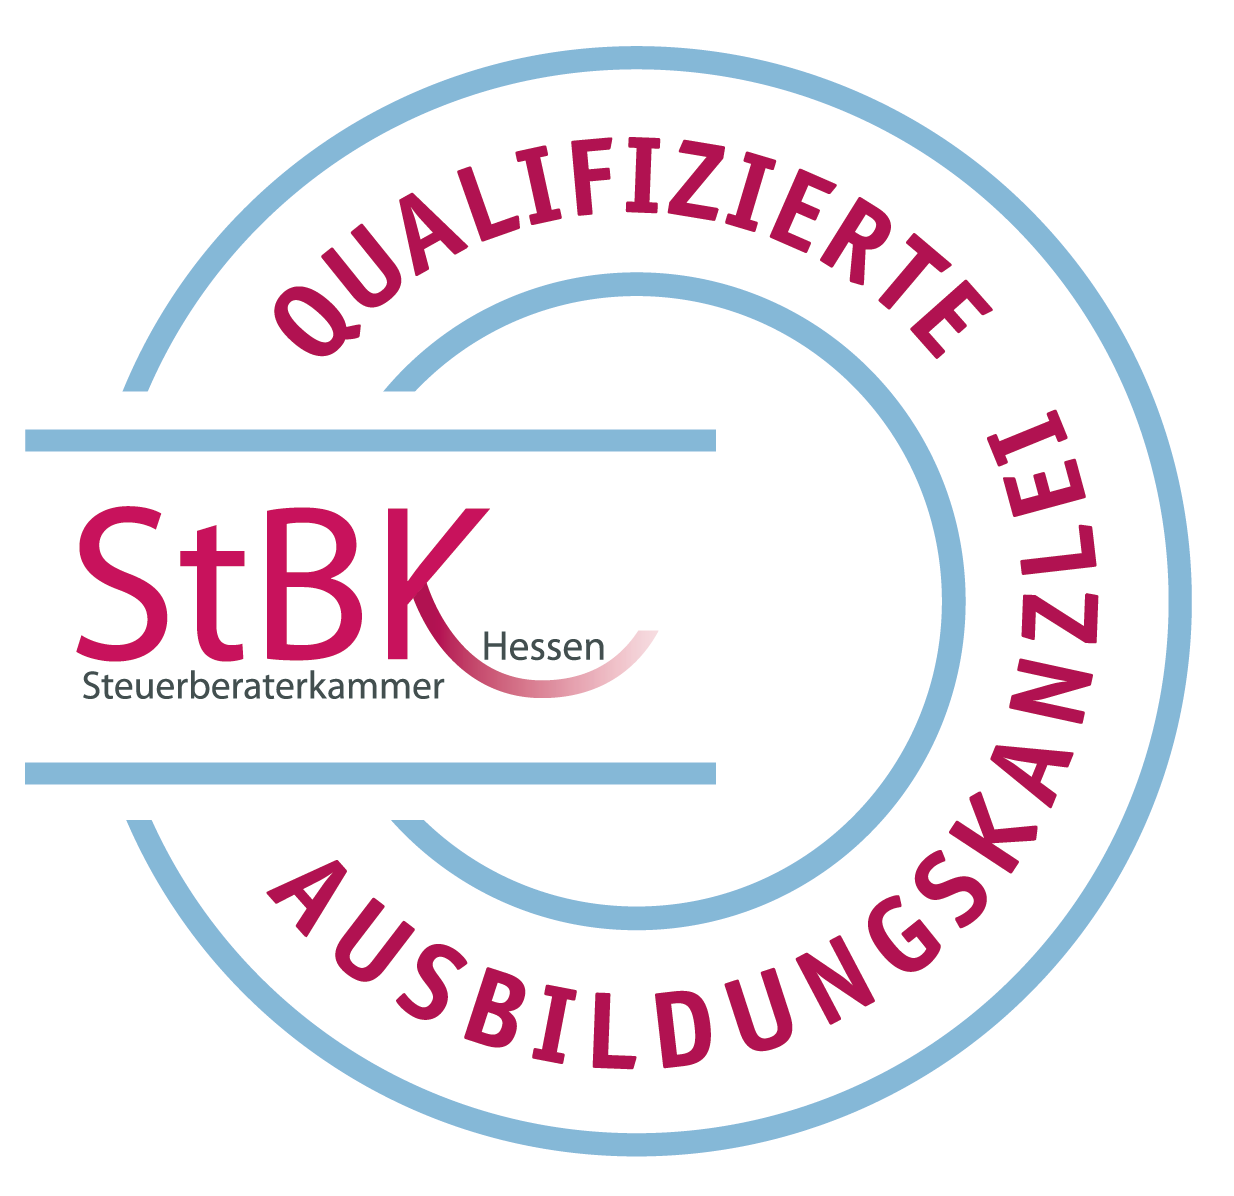 Logo Qualifizierte Ausbildungskanzlei